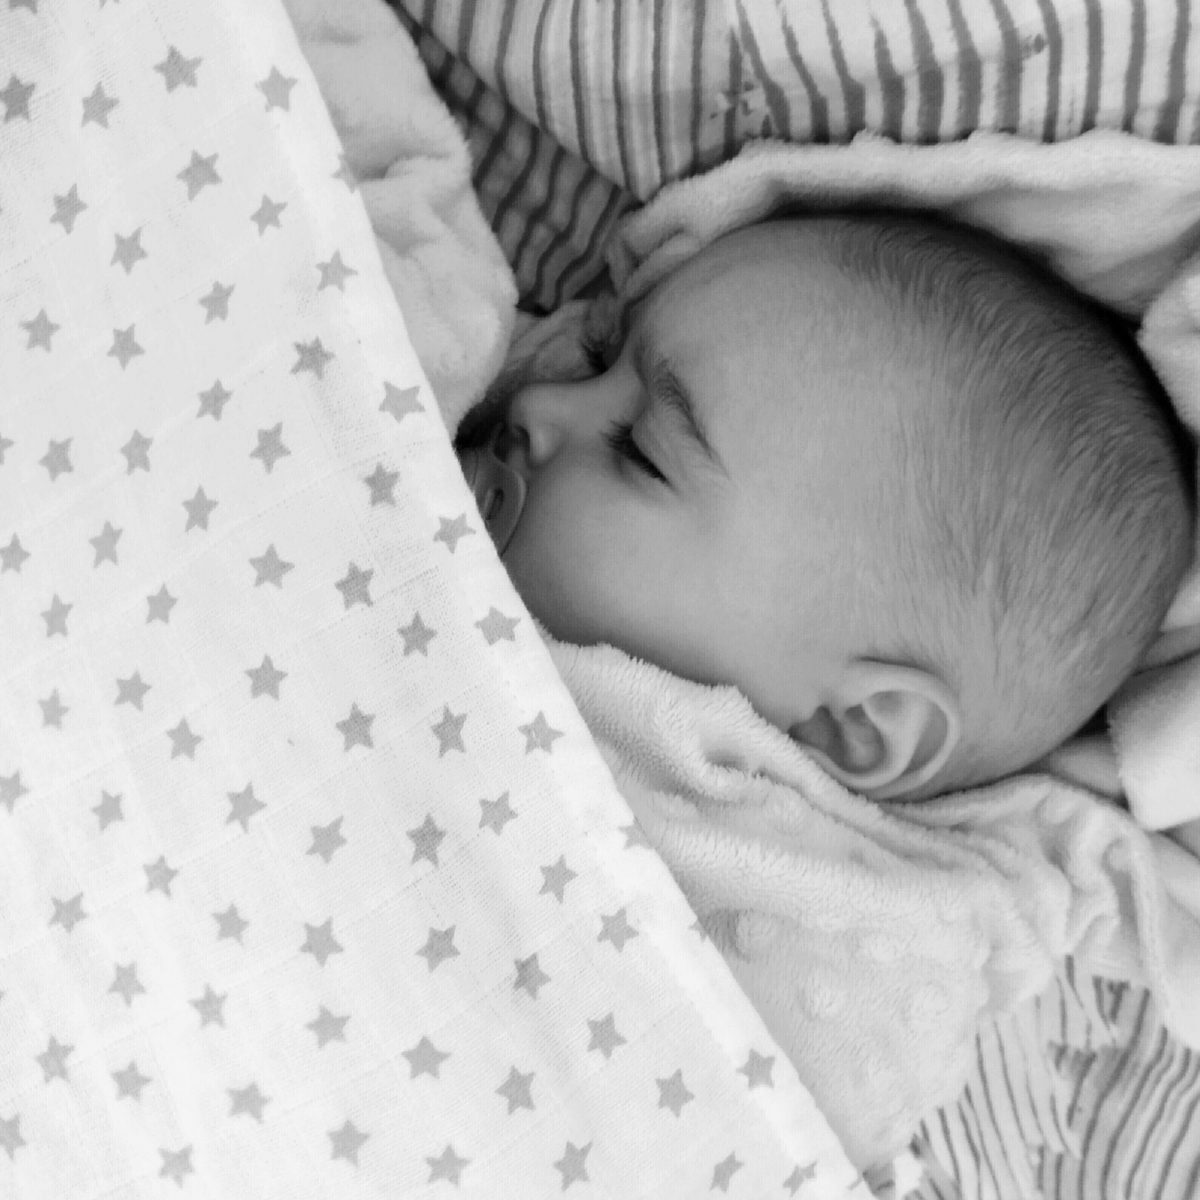 Muselinas - Bebé durmiendo arropado con una muselina